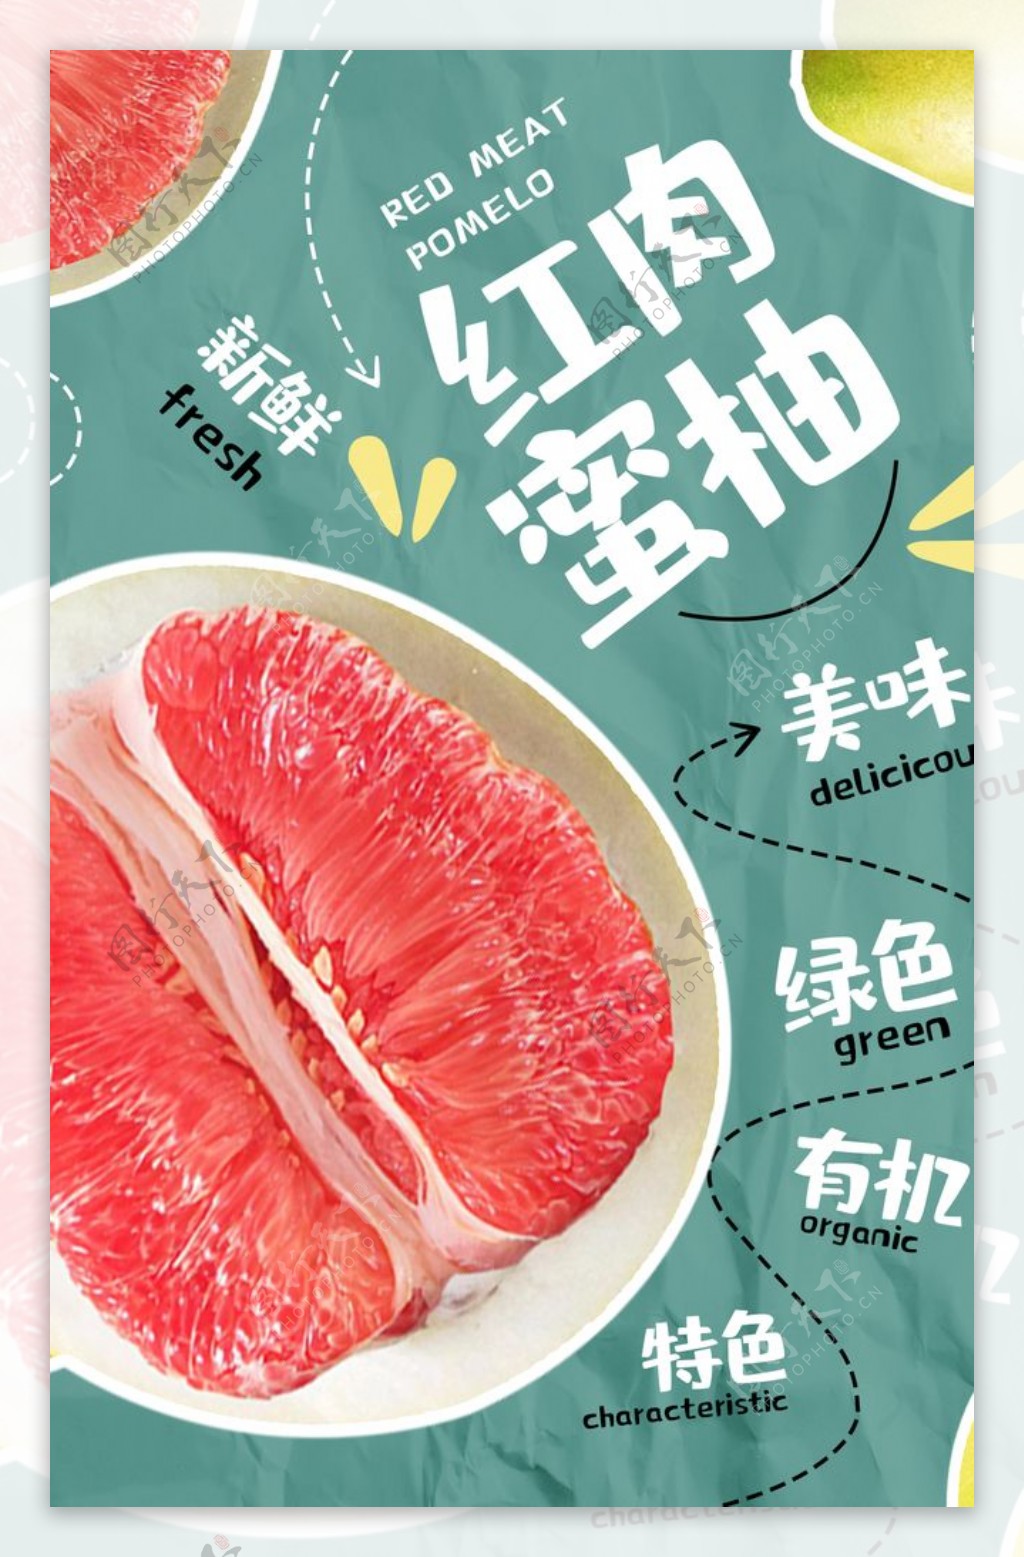 红肉蜜柚活动促销宣传海报素材